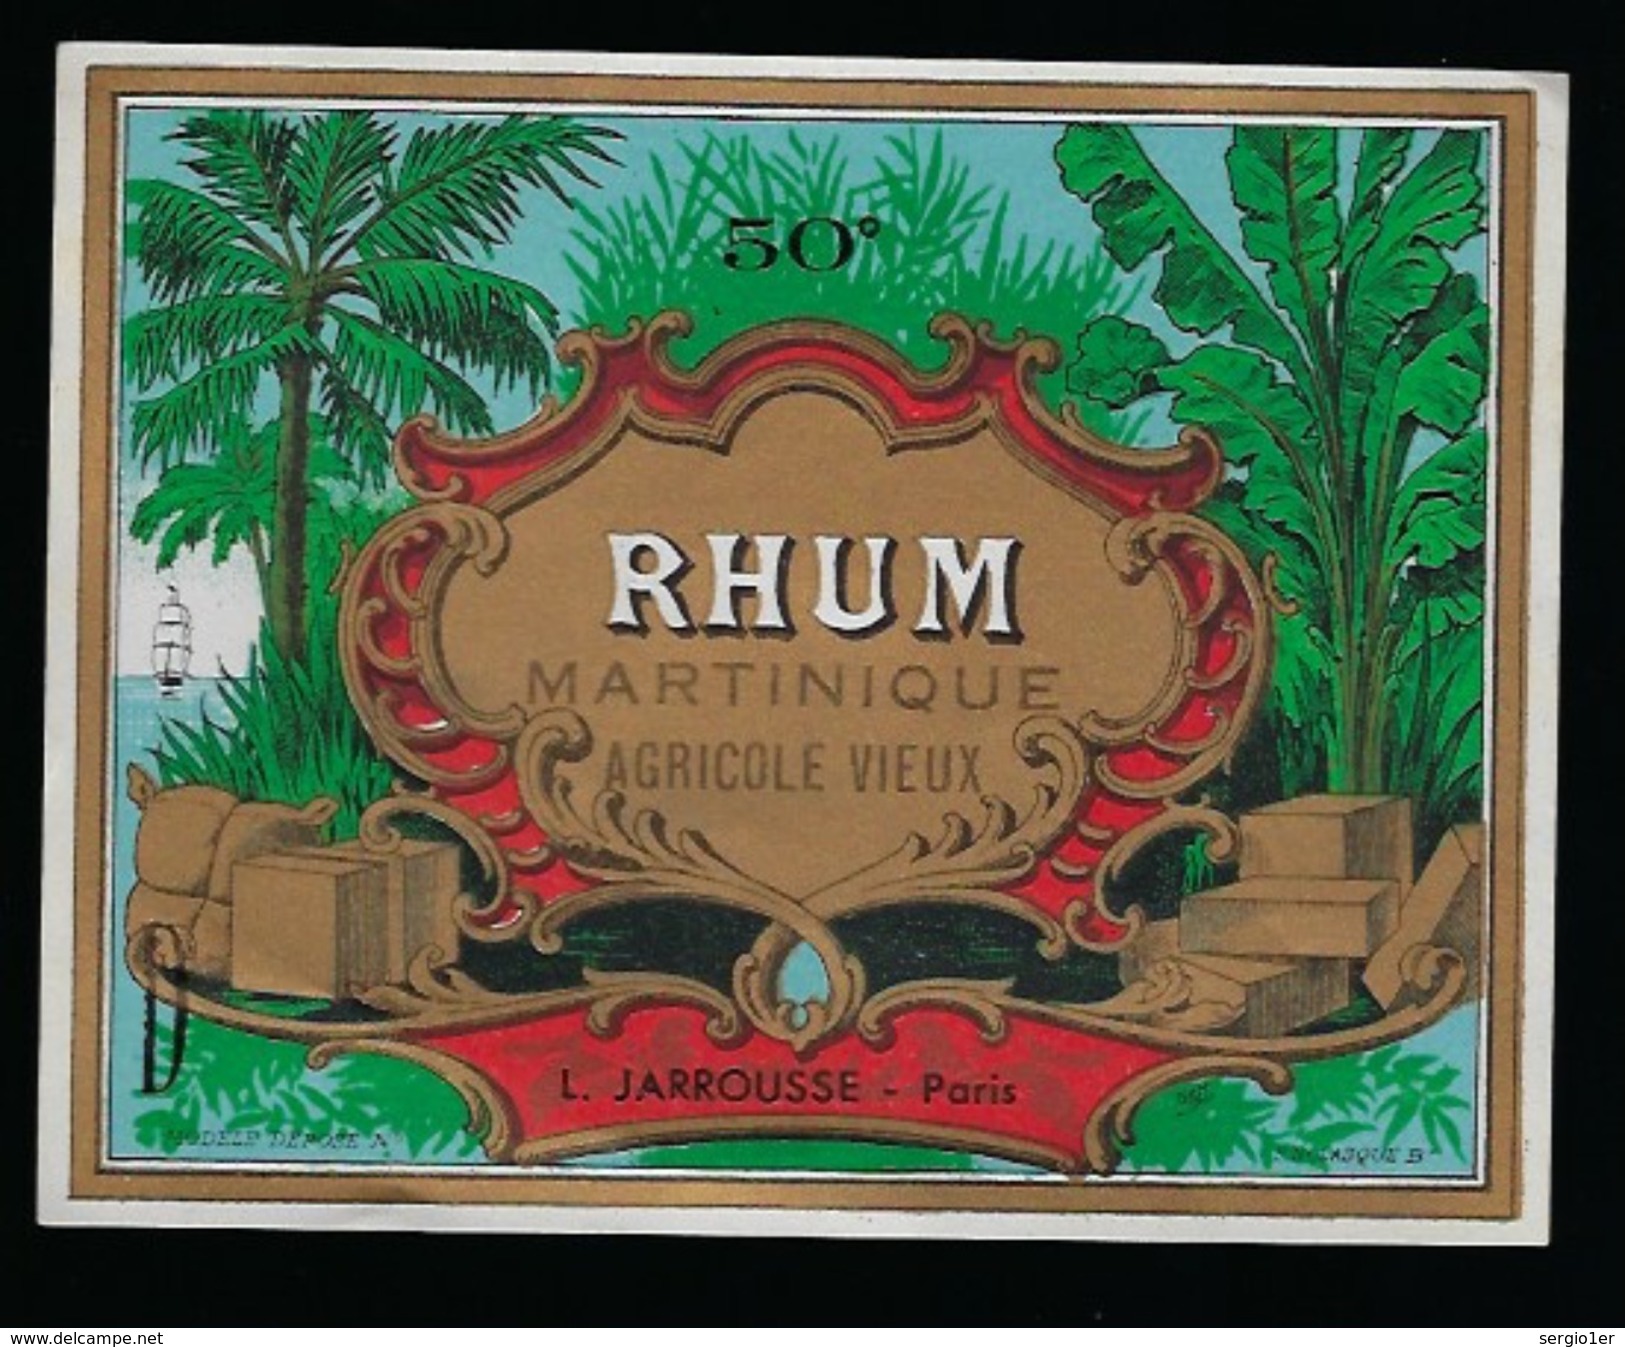 Ancienne Etiquette Rhum  Martinique Agricole Vieux  L Jarrousse Paris Imp F Nlasque Bordeaux - Rhum